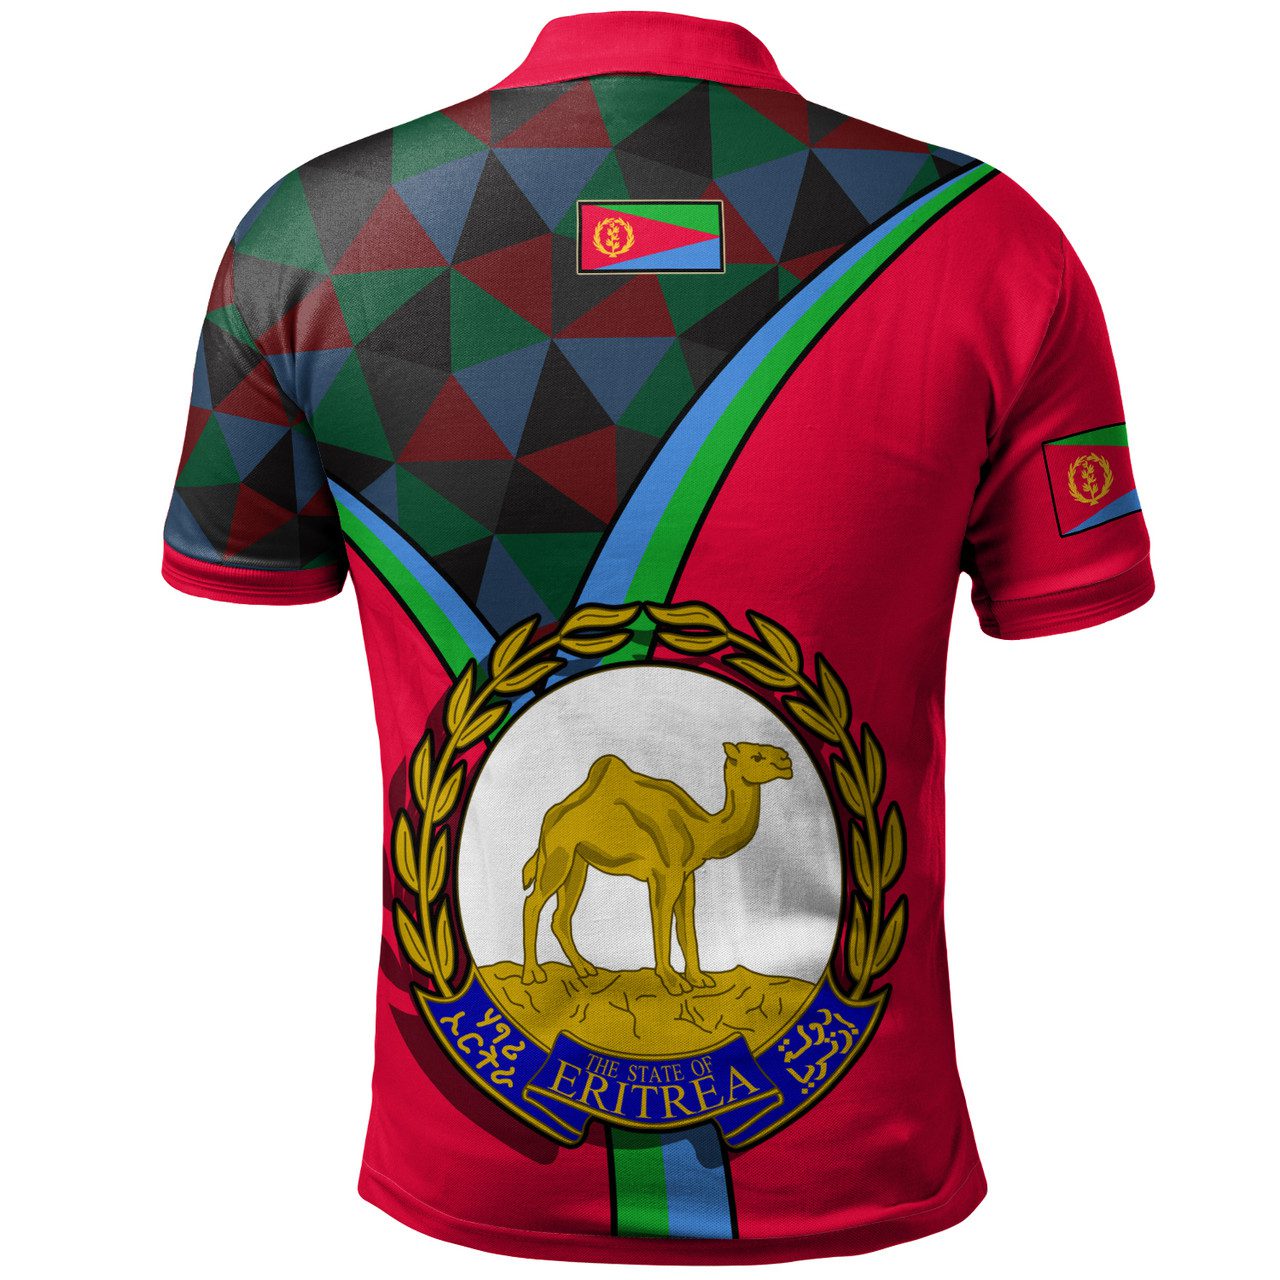 Eritrea Polo Shirt – Eritrea Pride Version Polo Shirt